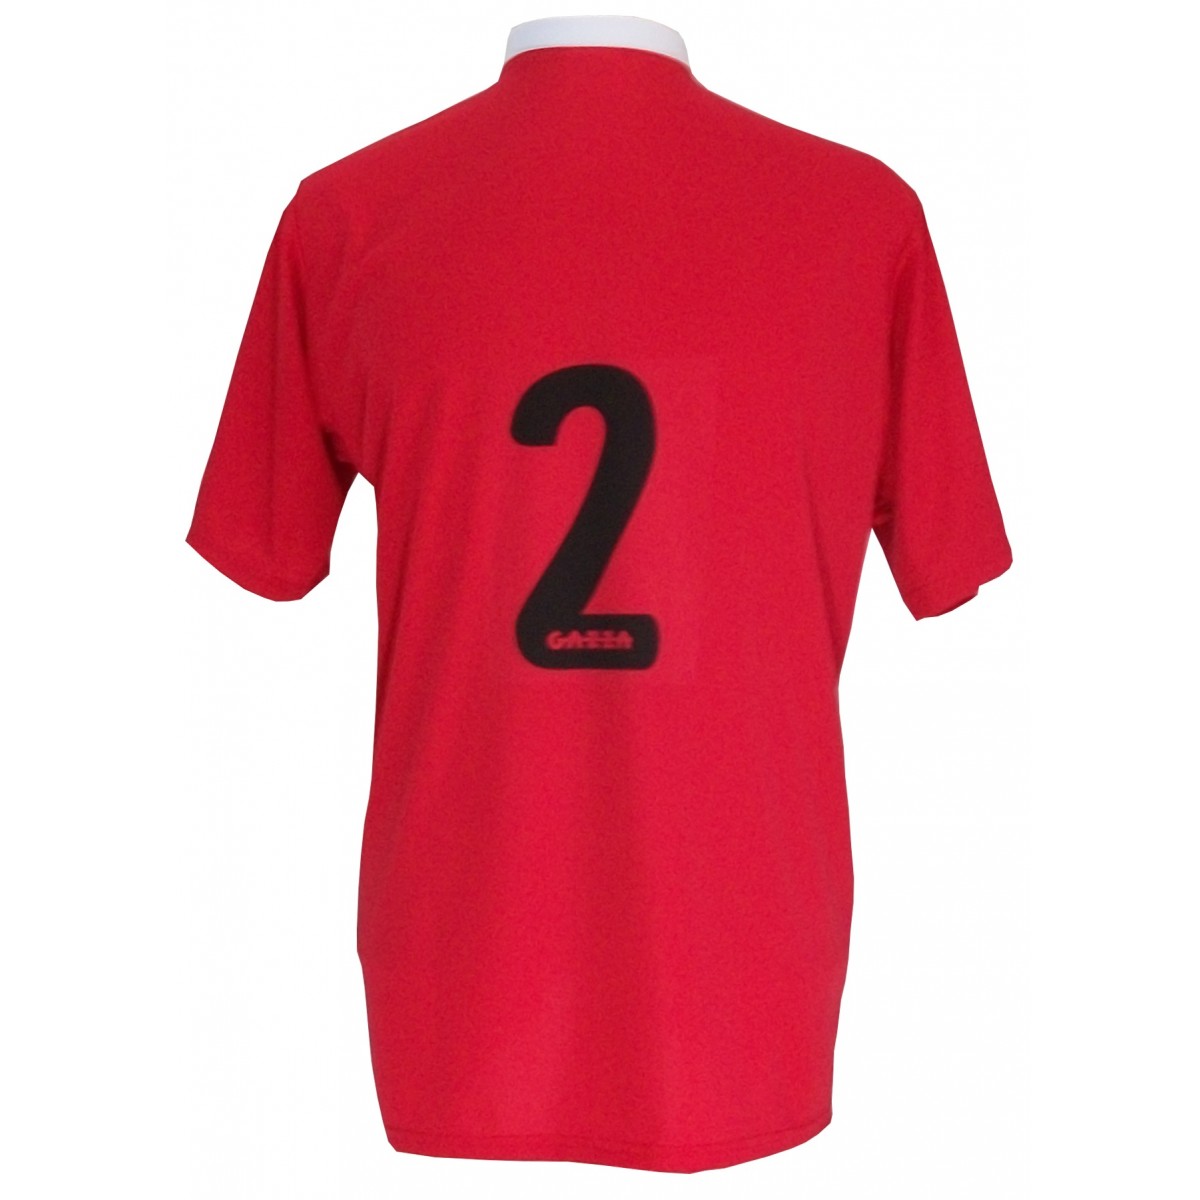 Uniforme Esportivo com 14 camisas modelo PSG Vermelho/Preto/Branco + 14 calções modelo Madrid + 1 Goleiro + Brindes